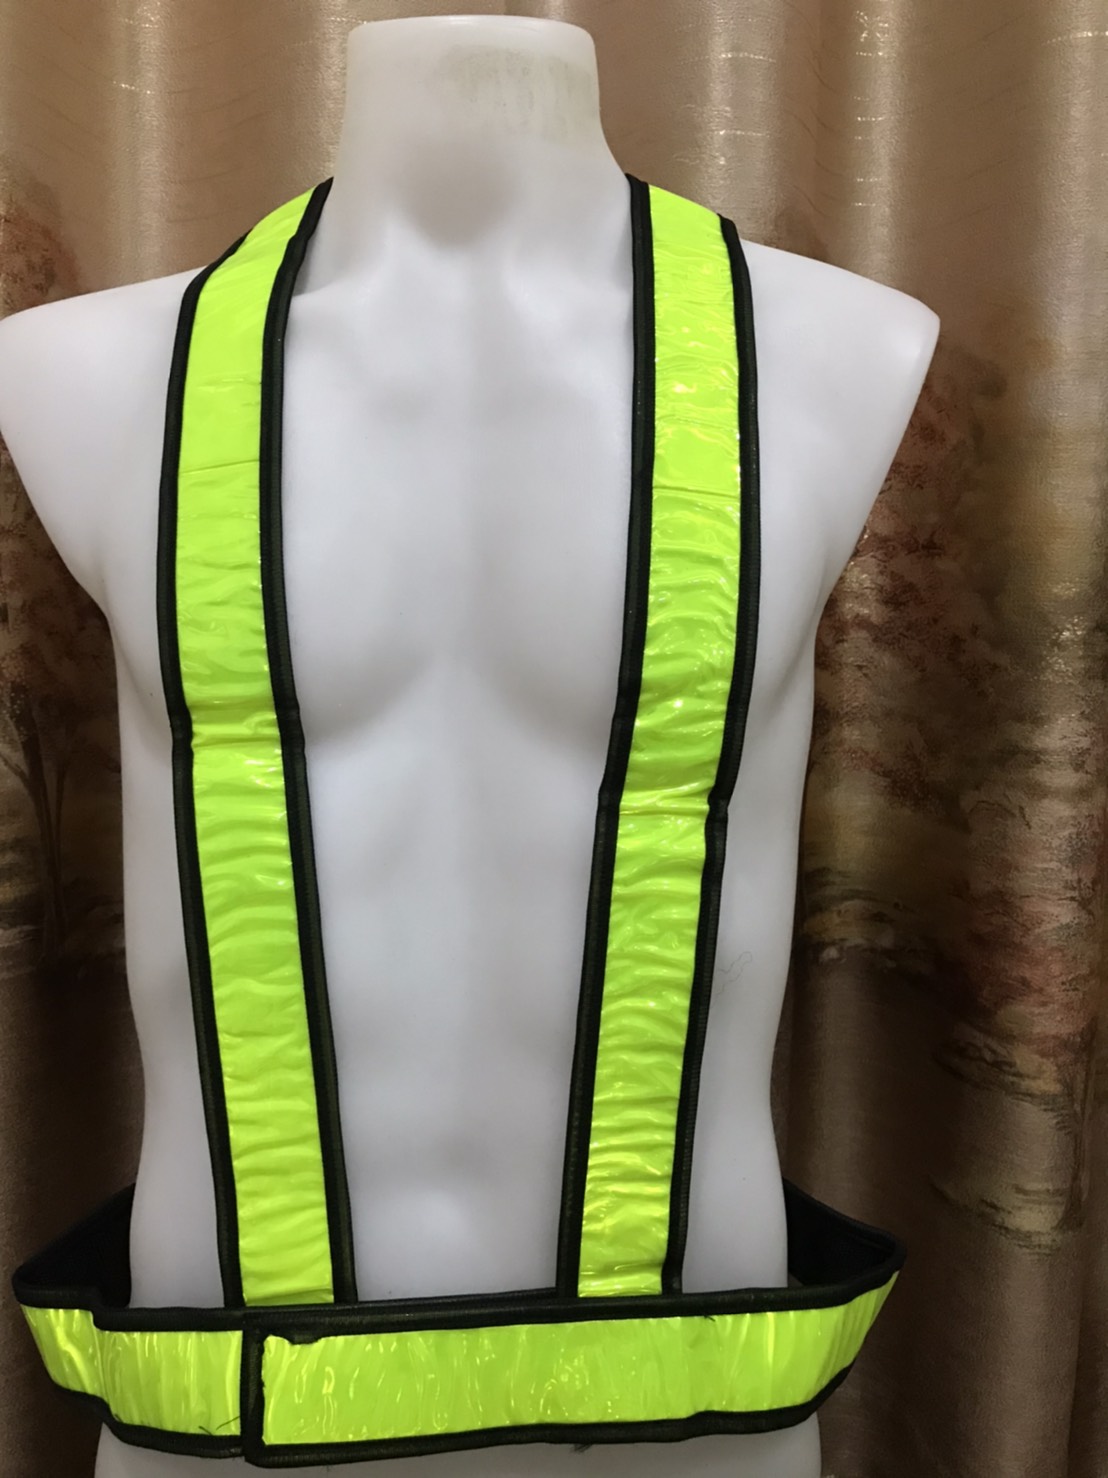 เสื้อกั๊กสะท้อนแสงป，safety vest ，Multi Adjustable Outdoor Safety Visibility Reflective Vest Gear Stripes，เสื้อกั๊กสะท้อนแสงปรับยืดหยุ่นสายเสื้อกล้ามสำหรับวิ่งปั่นจักรยานจ๊อกกิ้ง เสื้อจราจร เสื้อกั๊กจราจร เสื้อกั๊กสะท้อนแสง 23 คะแนนคำถาม 2 ได้รับการตอบ